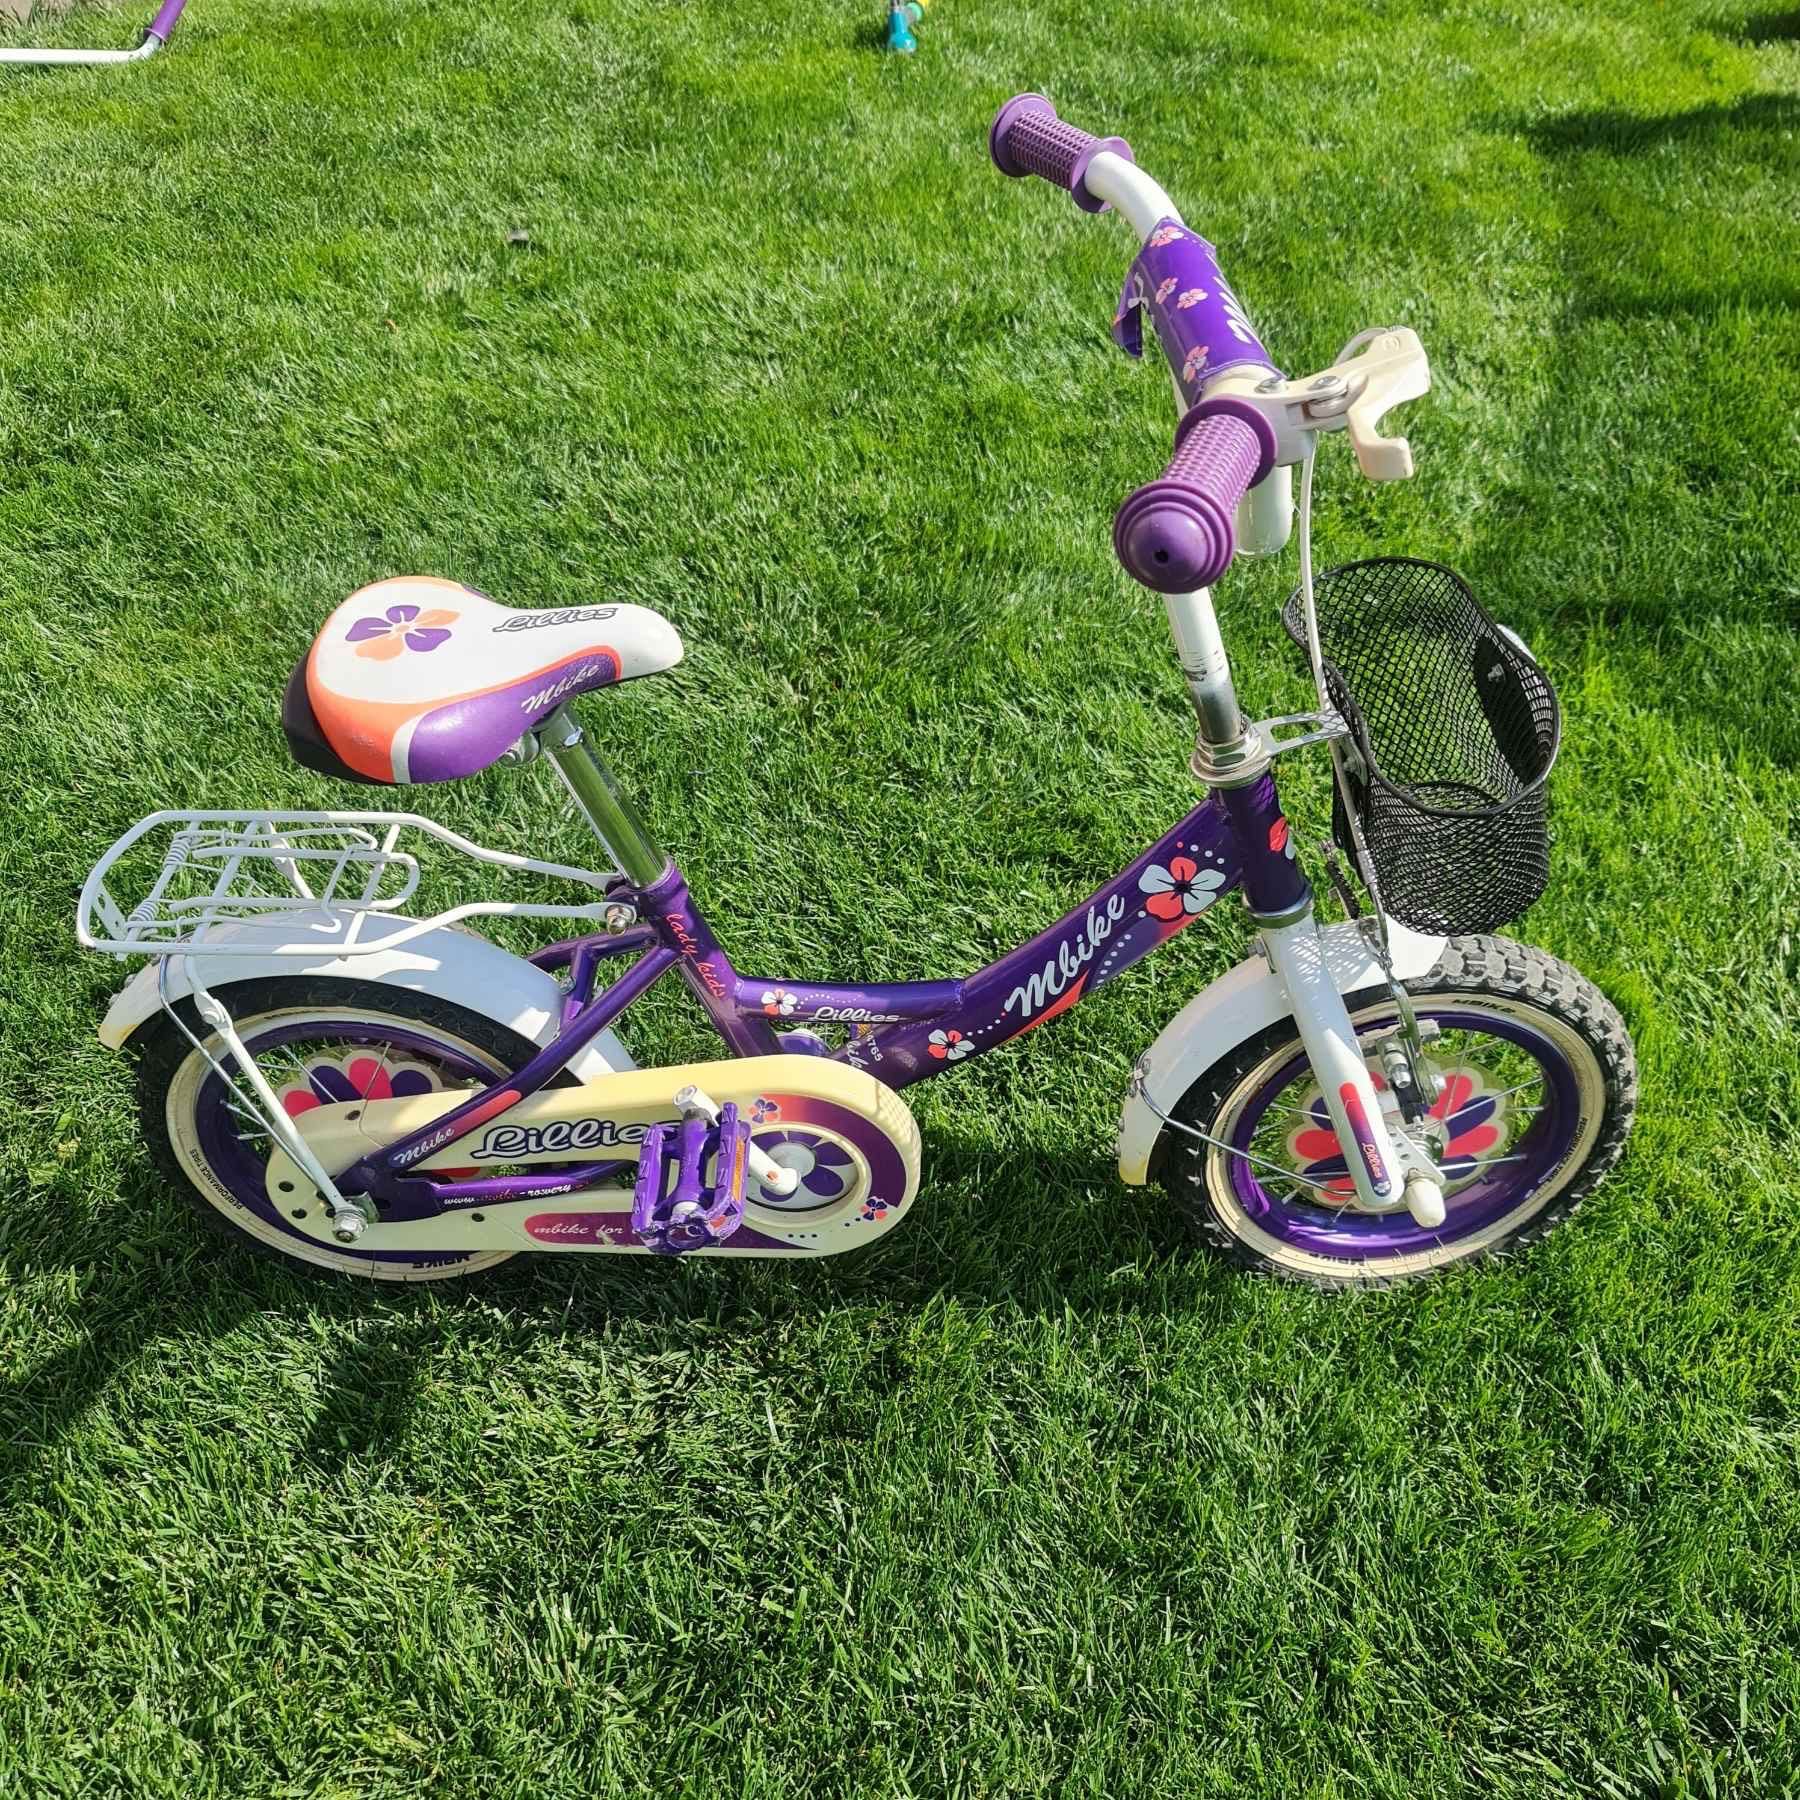 Дитячий велосипед двоколісний 3-5 років